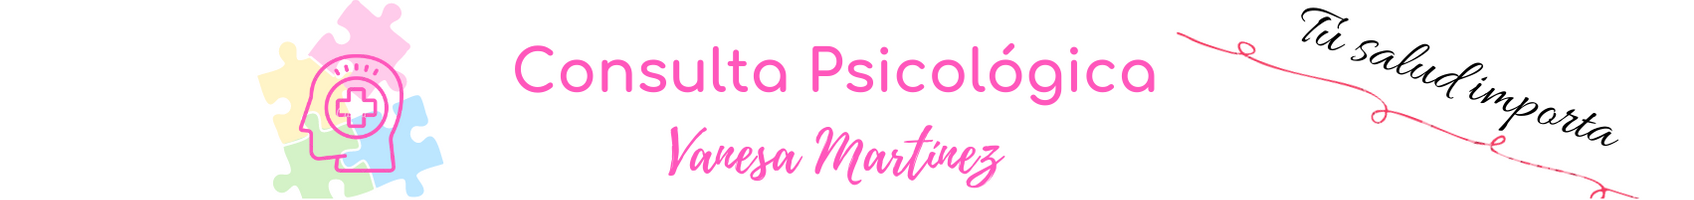 Consulta Psicológica Vanesa Martínez